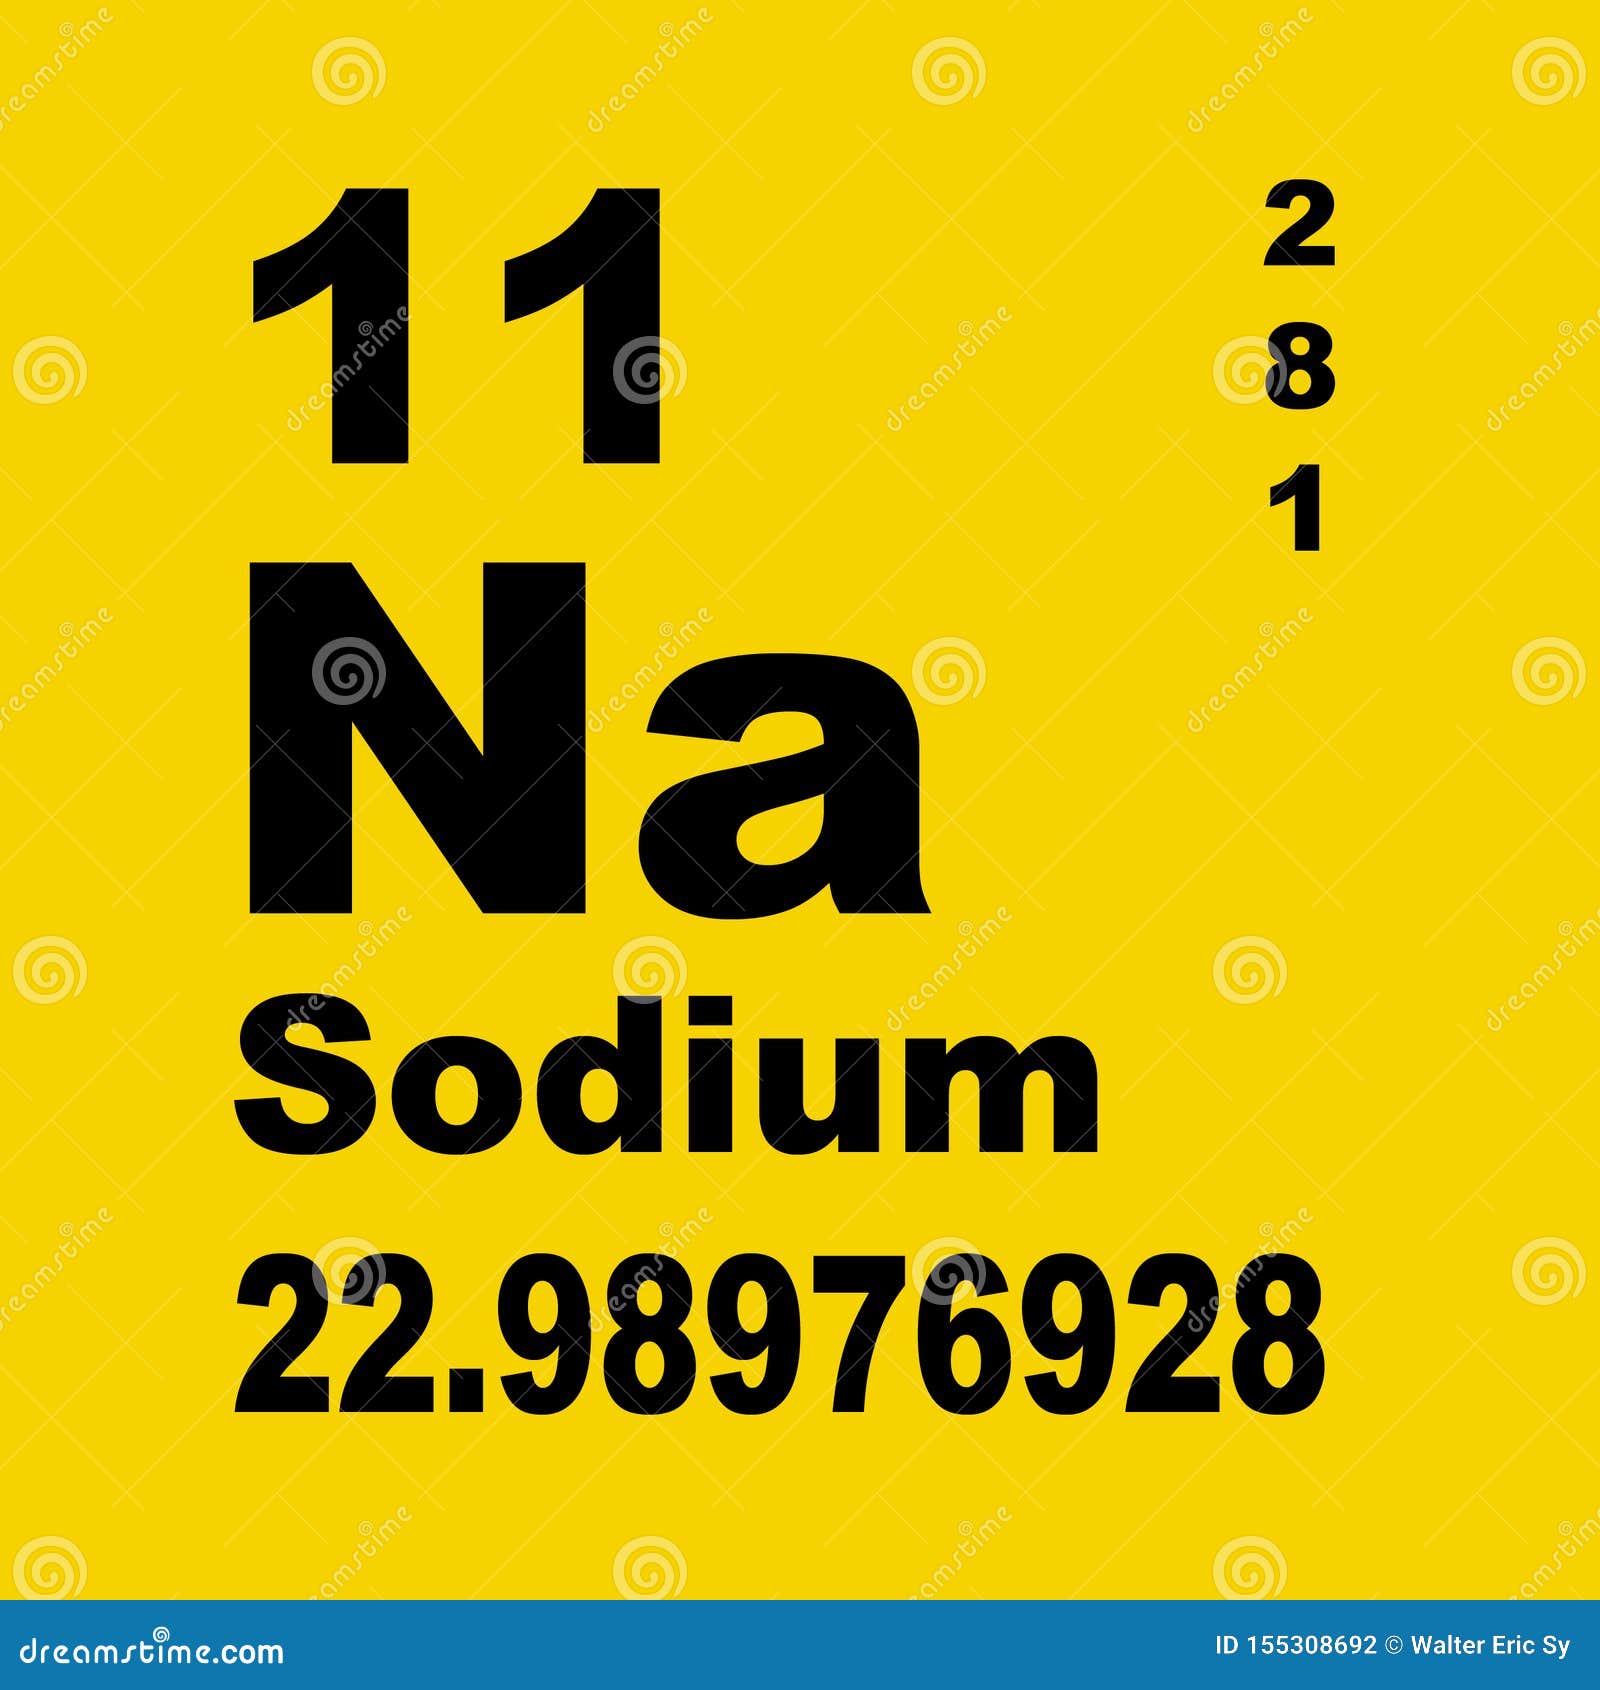 sodium on periodic table